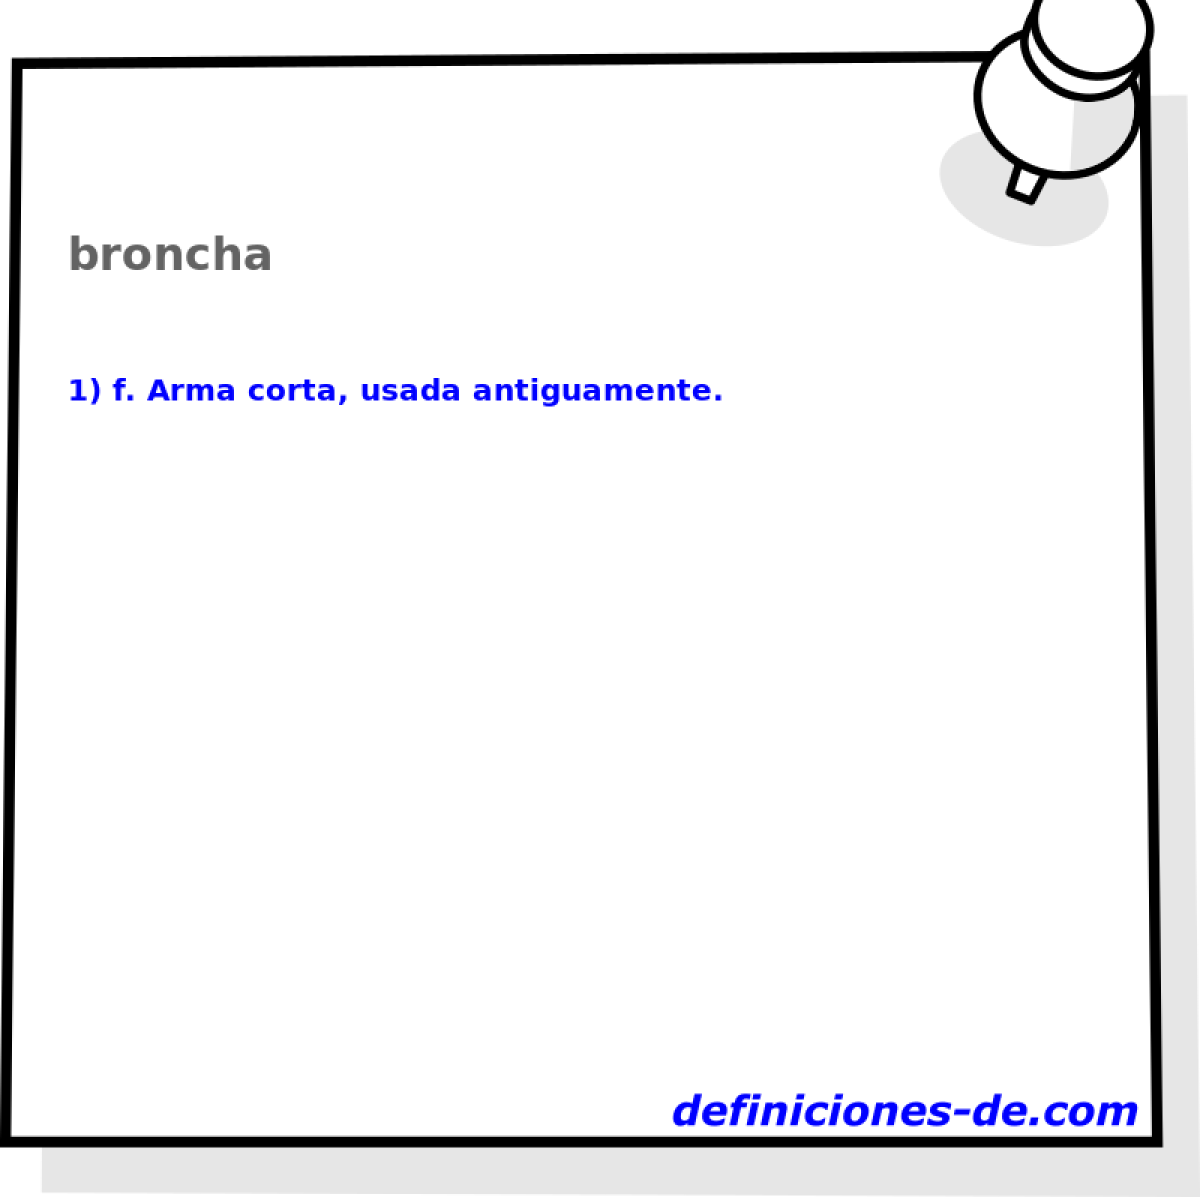 broncha 